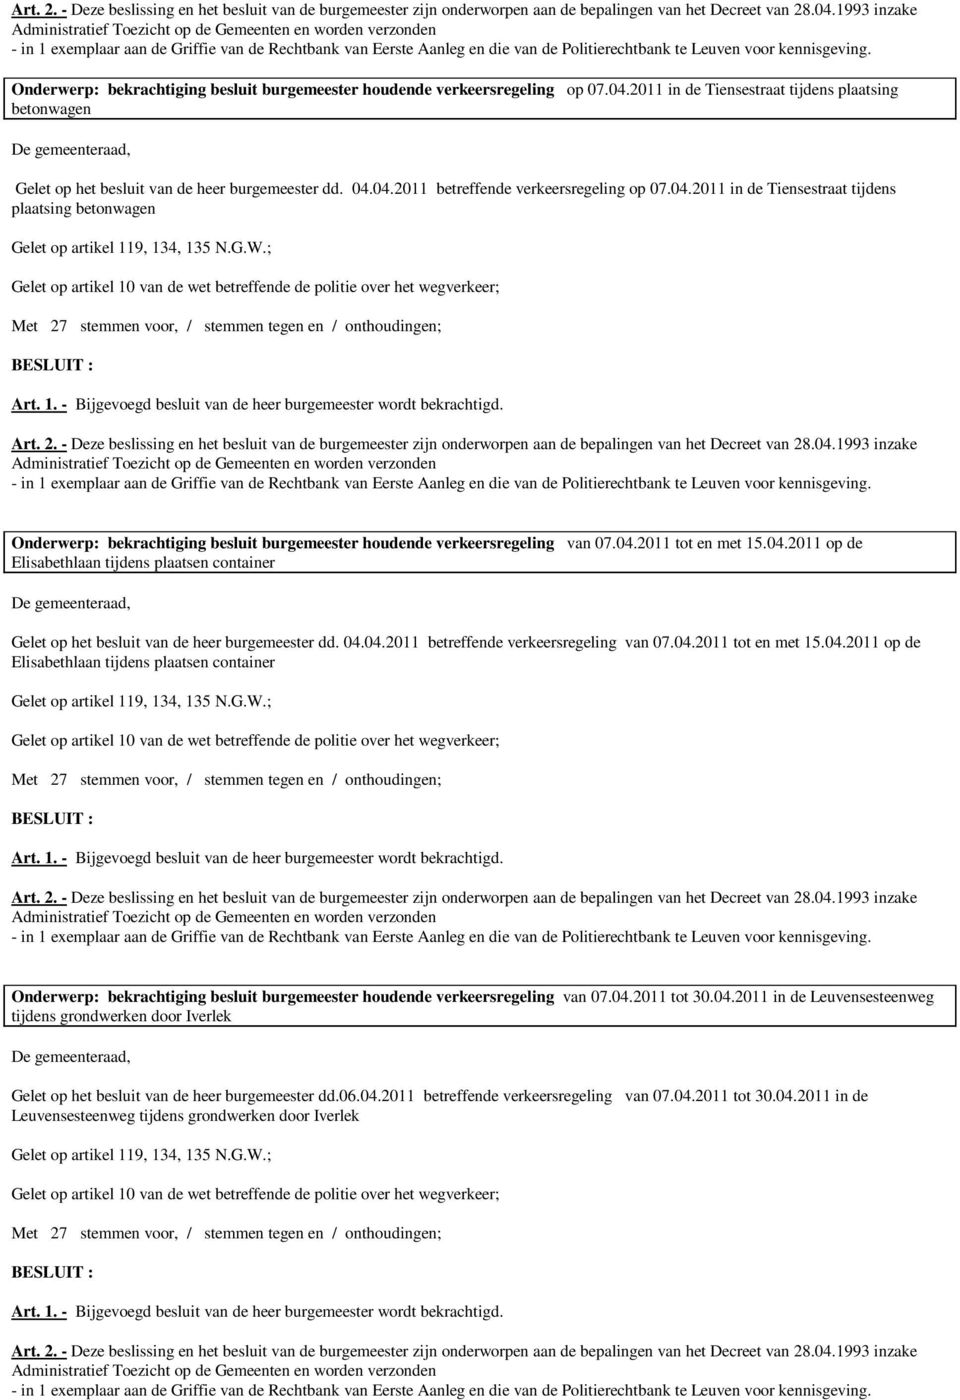 04.04.2011 betreffende verkeersregeling van 07.04.2011 tot en met 15.04.2011 op de Elisabethlaan tijdens plaatsen container Onderwerp: bekrachtiging besluit burgemeester houdende verkeersregeling van 07.